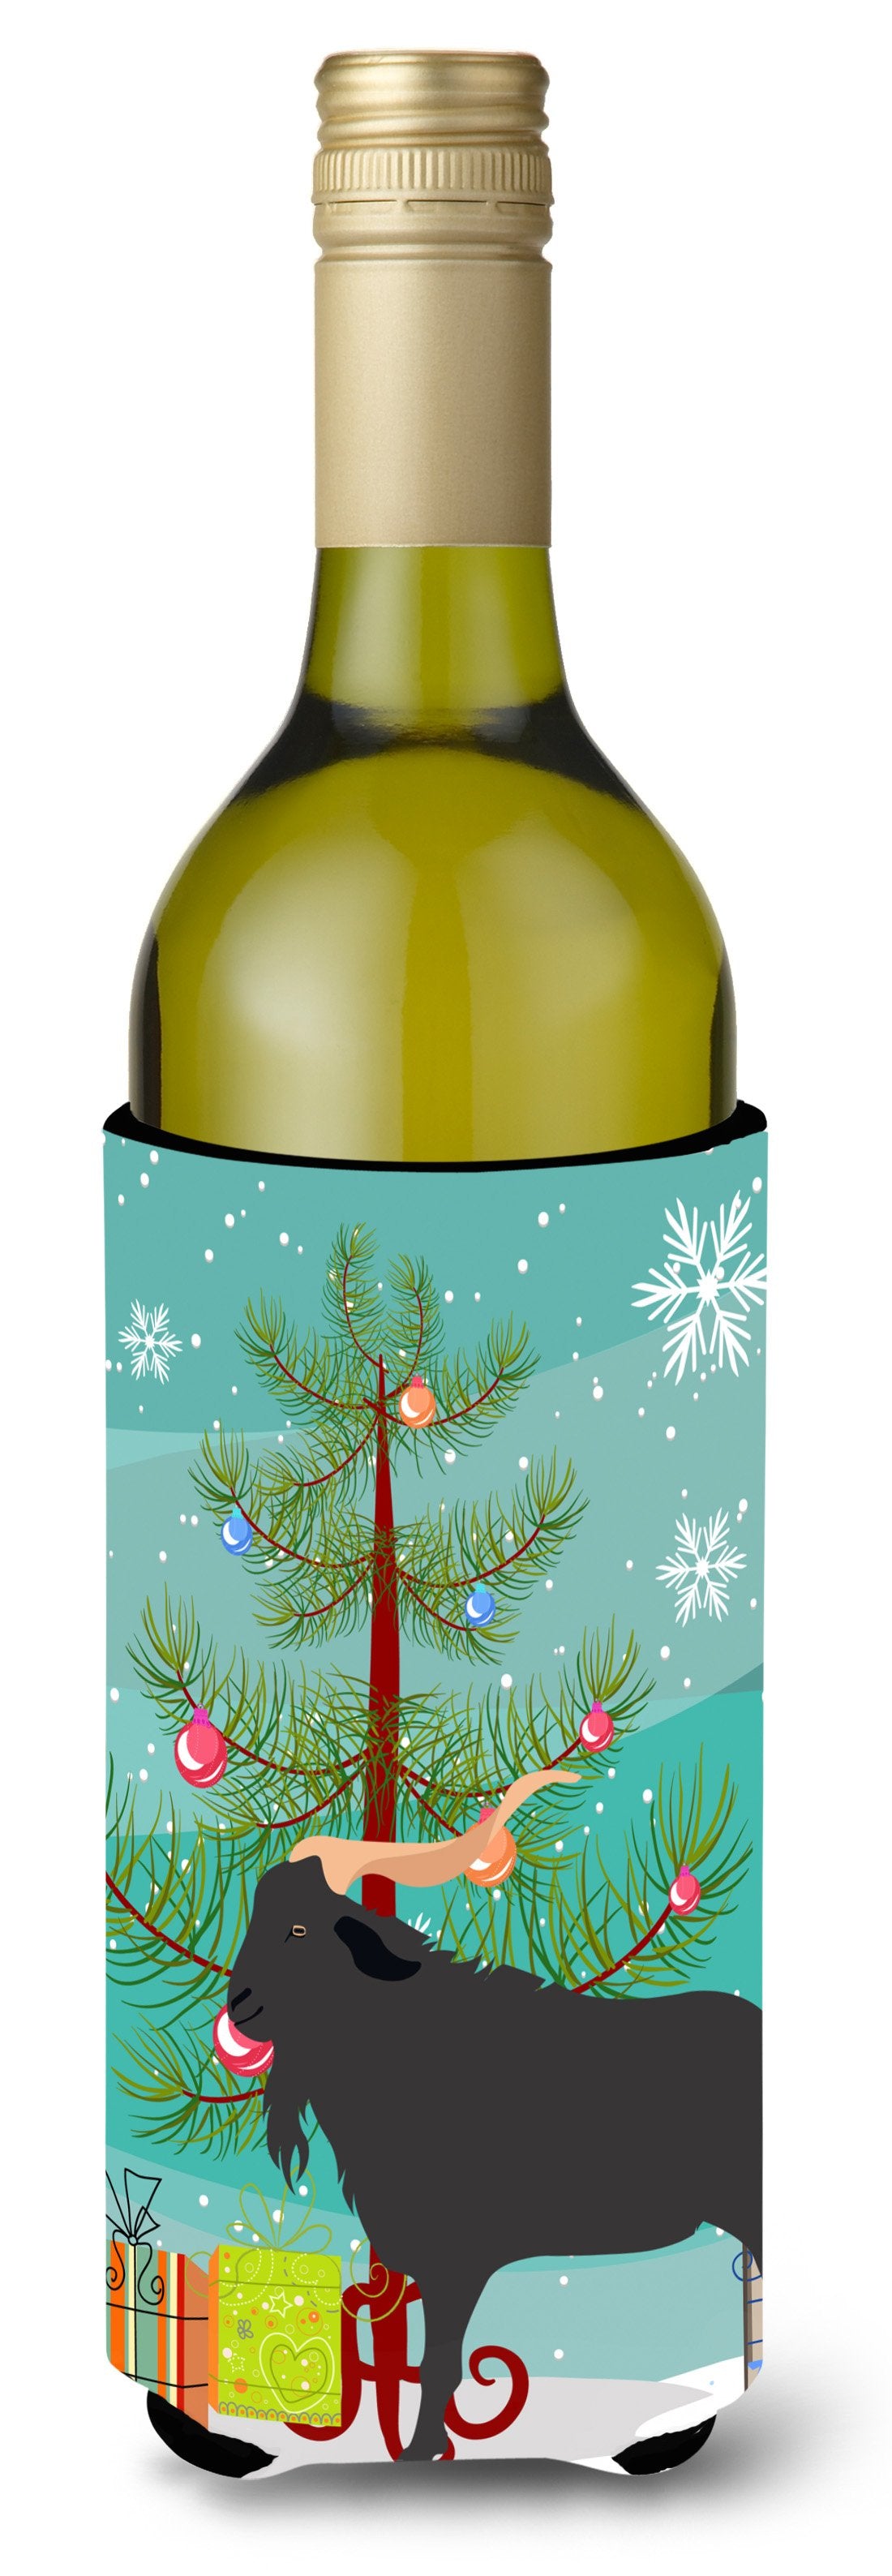 Verata Goat Christmas Wine Bottle Beverge Insulator Hugger BB9249LITERK by Caroline's Treasures